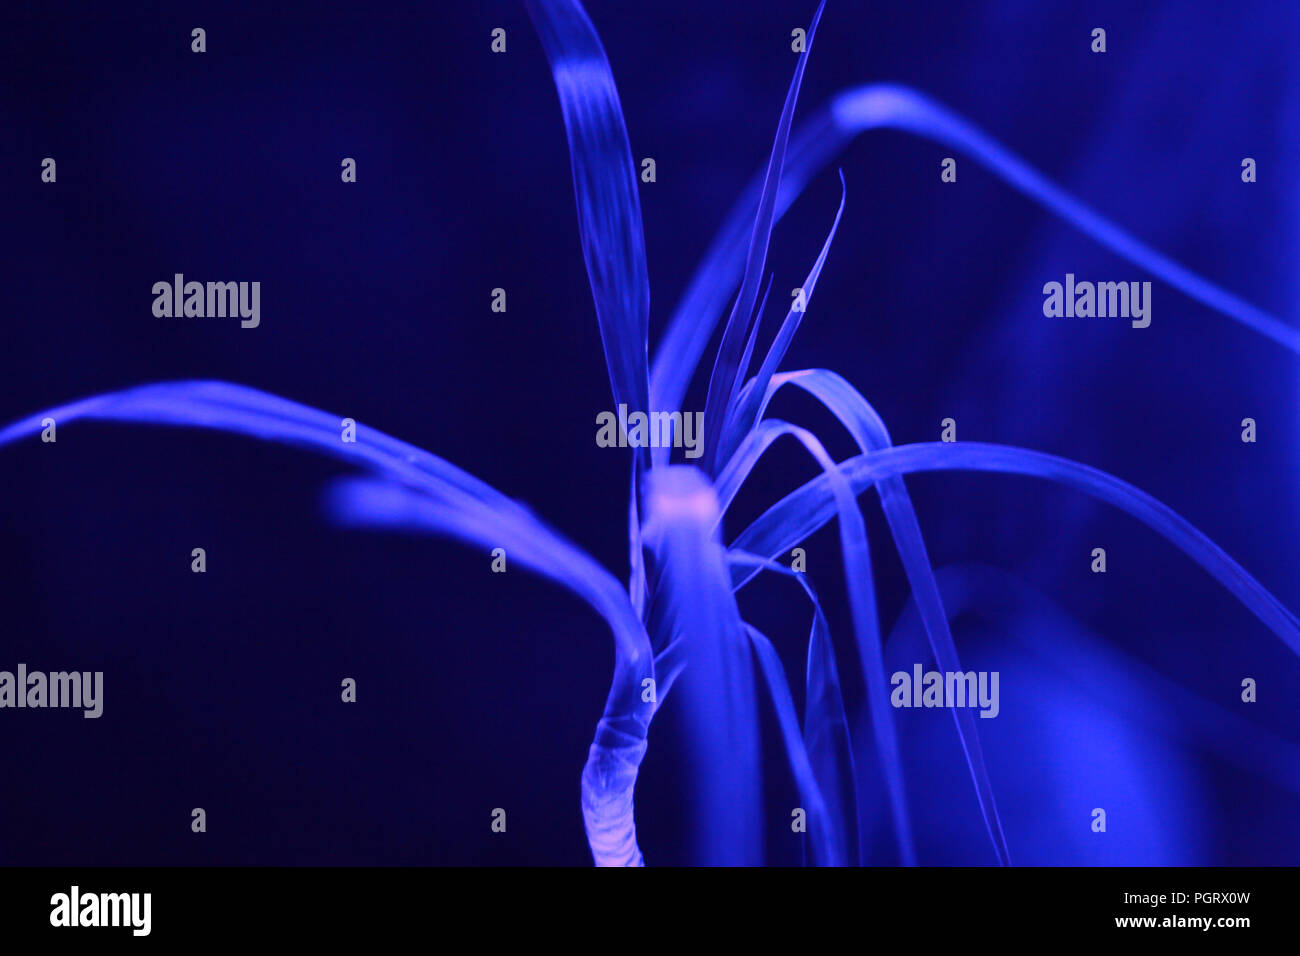 Pflanzen in Neon Fluoreszenz blaues Licht Stockfotografie - Alamy